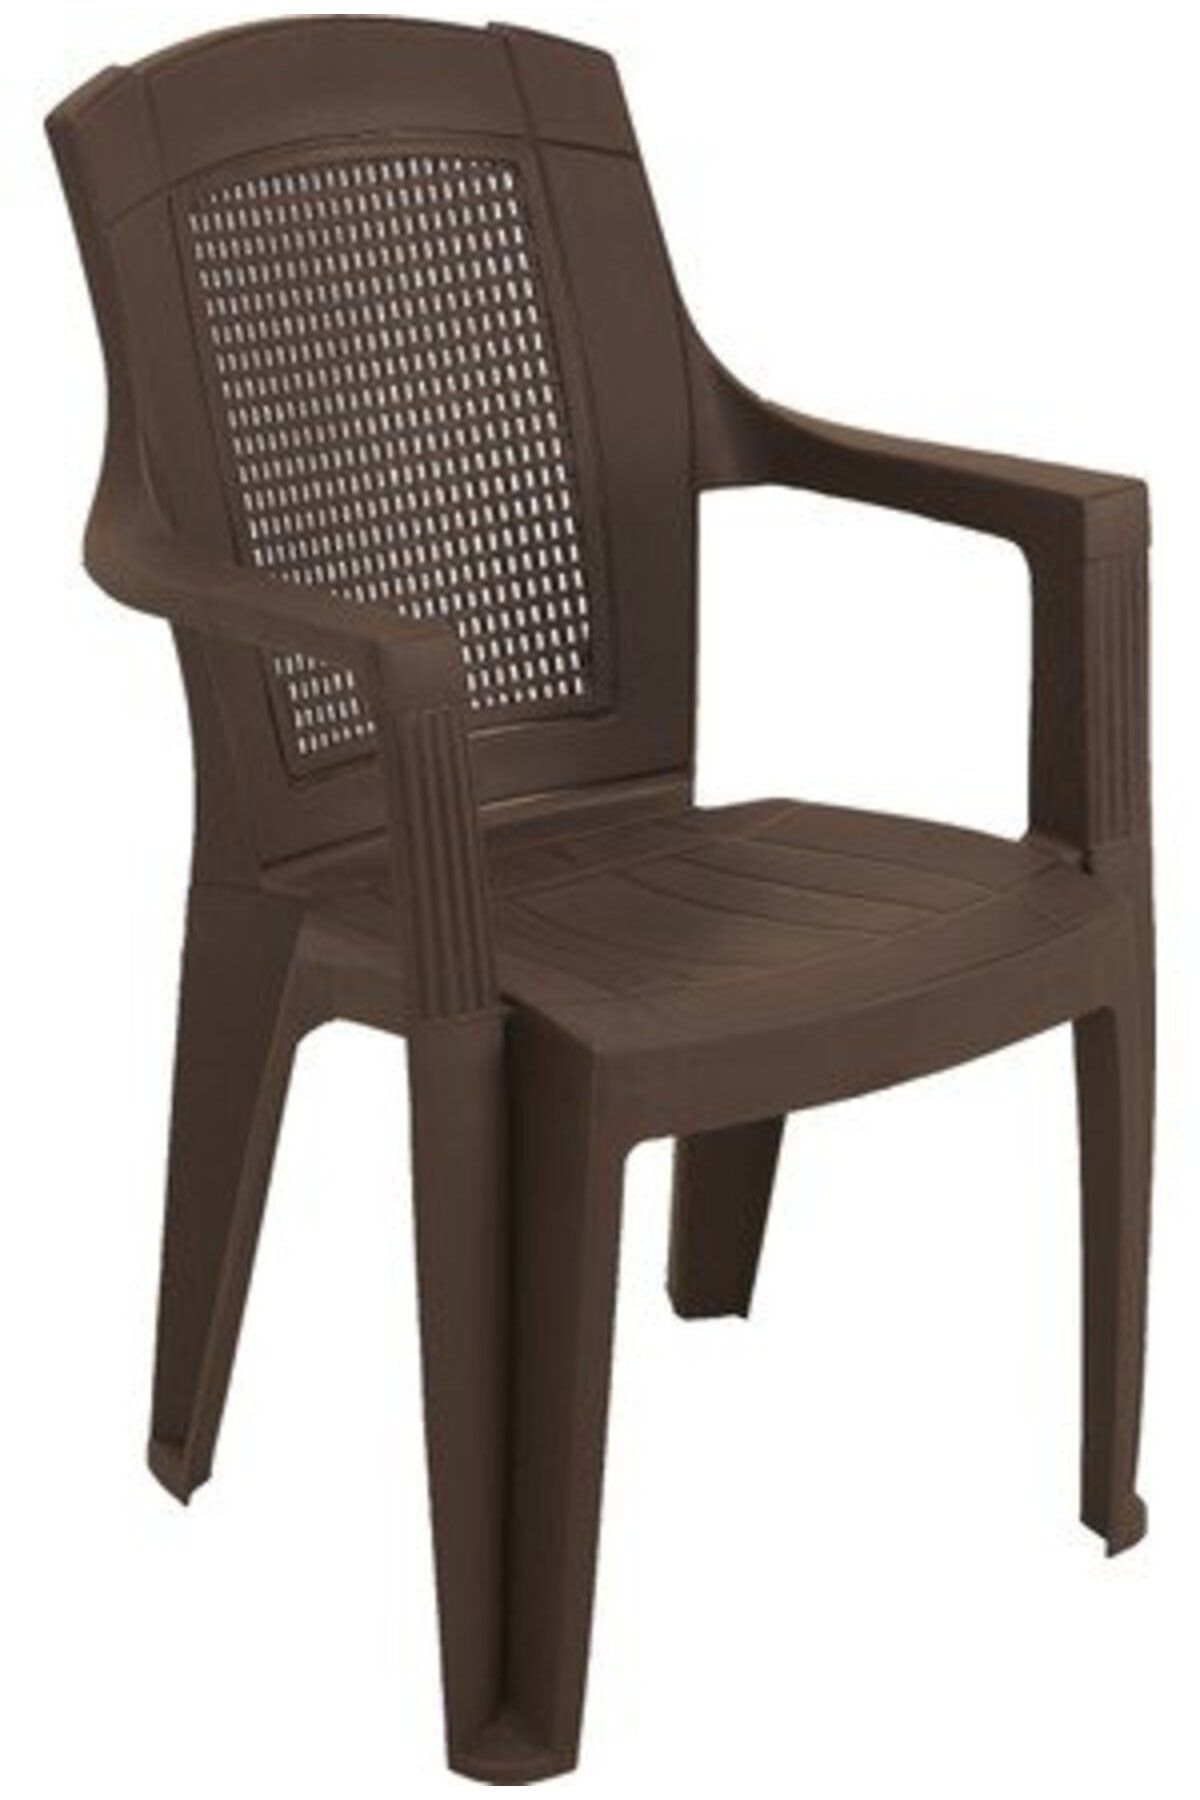 Seta Rombo Kahverengi 2'li Plastik Sandalye Rombo Kahverengi 2'li